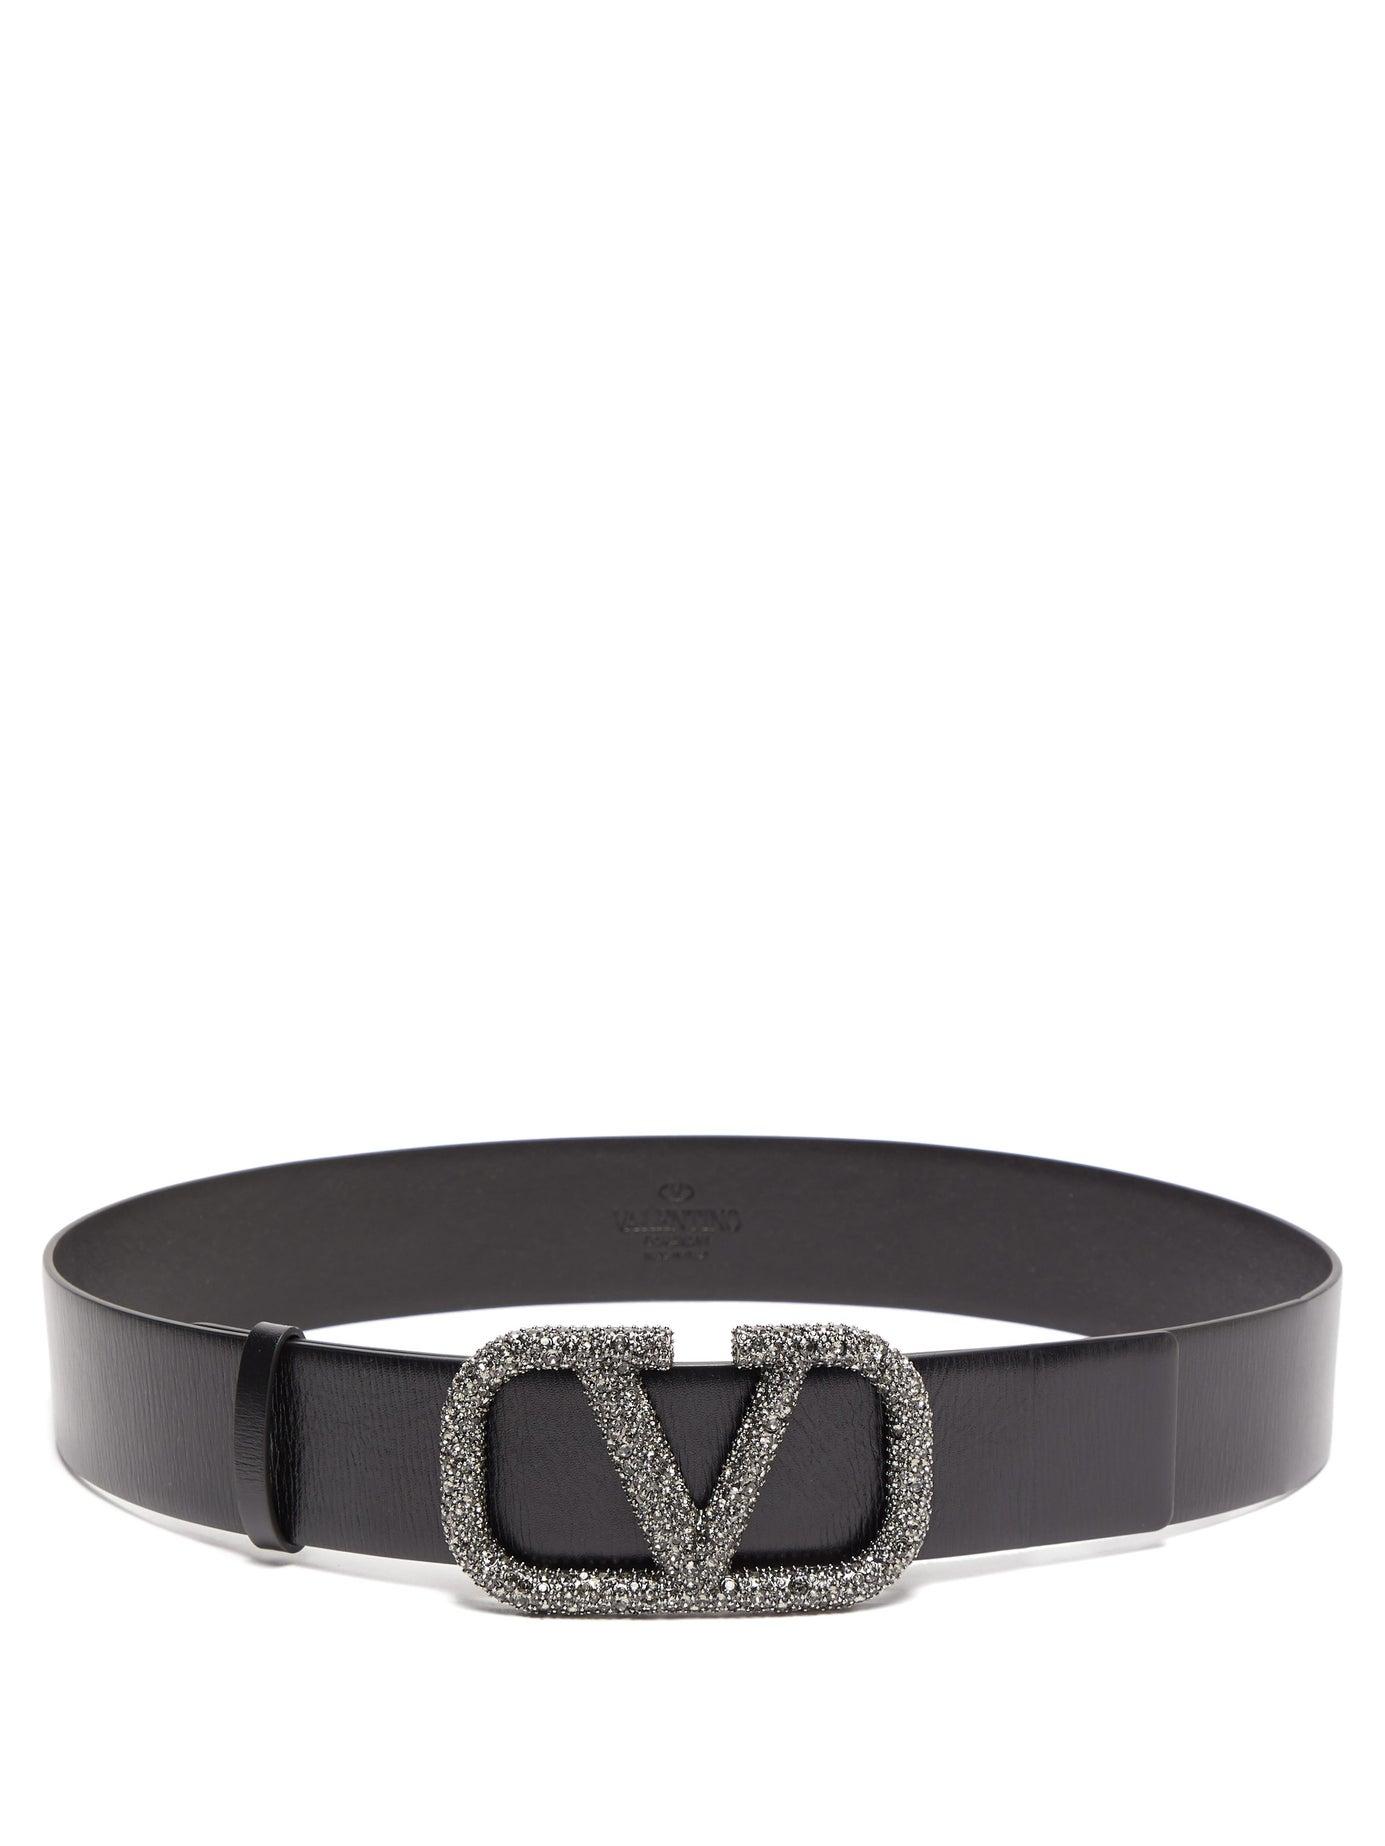 Valentino V Logo Crystal Embellished Leather Belt in Black | Lyst